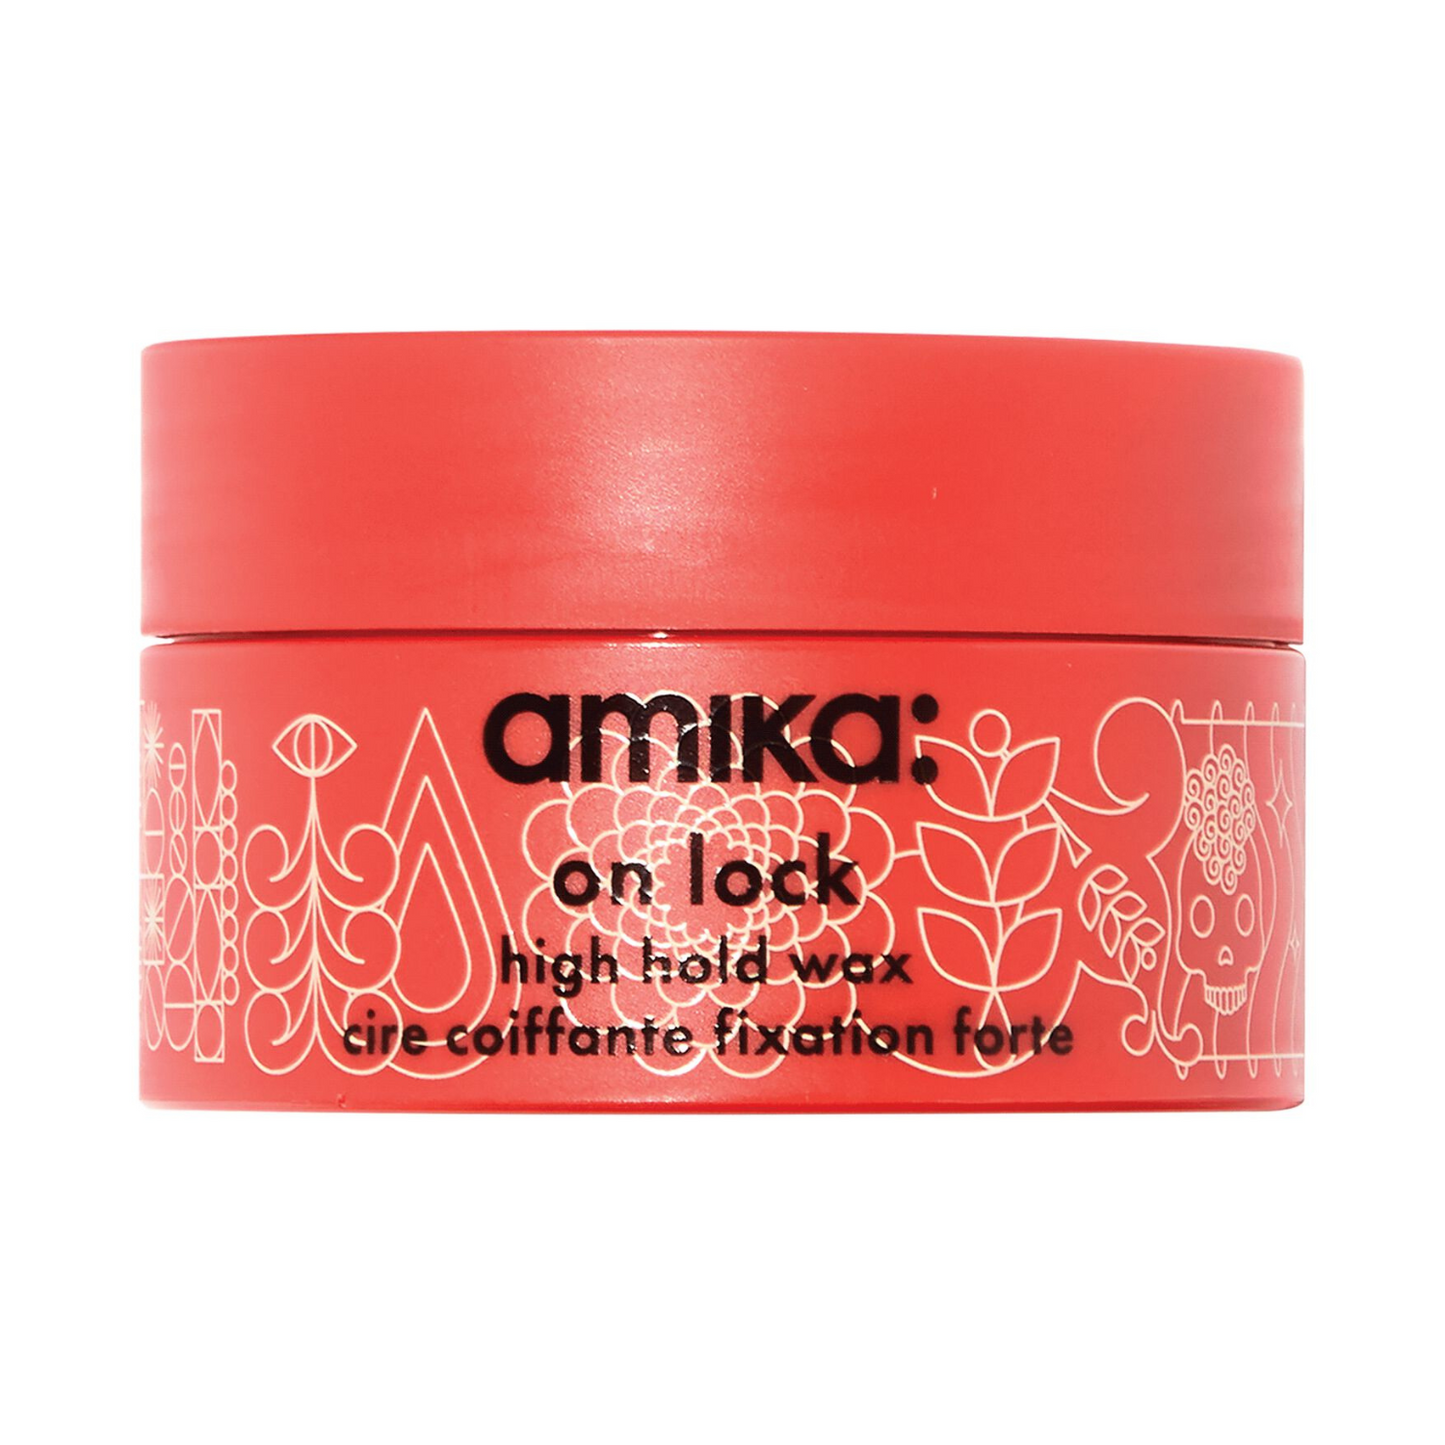 amika - On Lock High Hold Wax